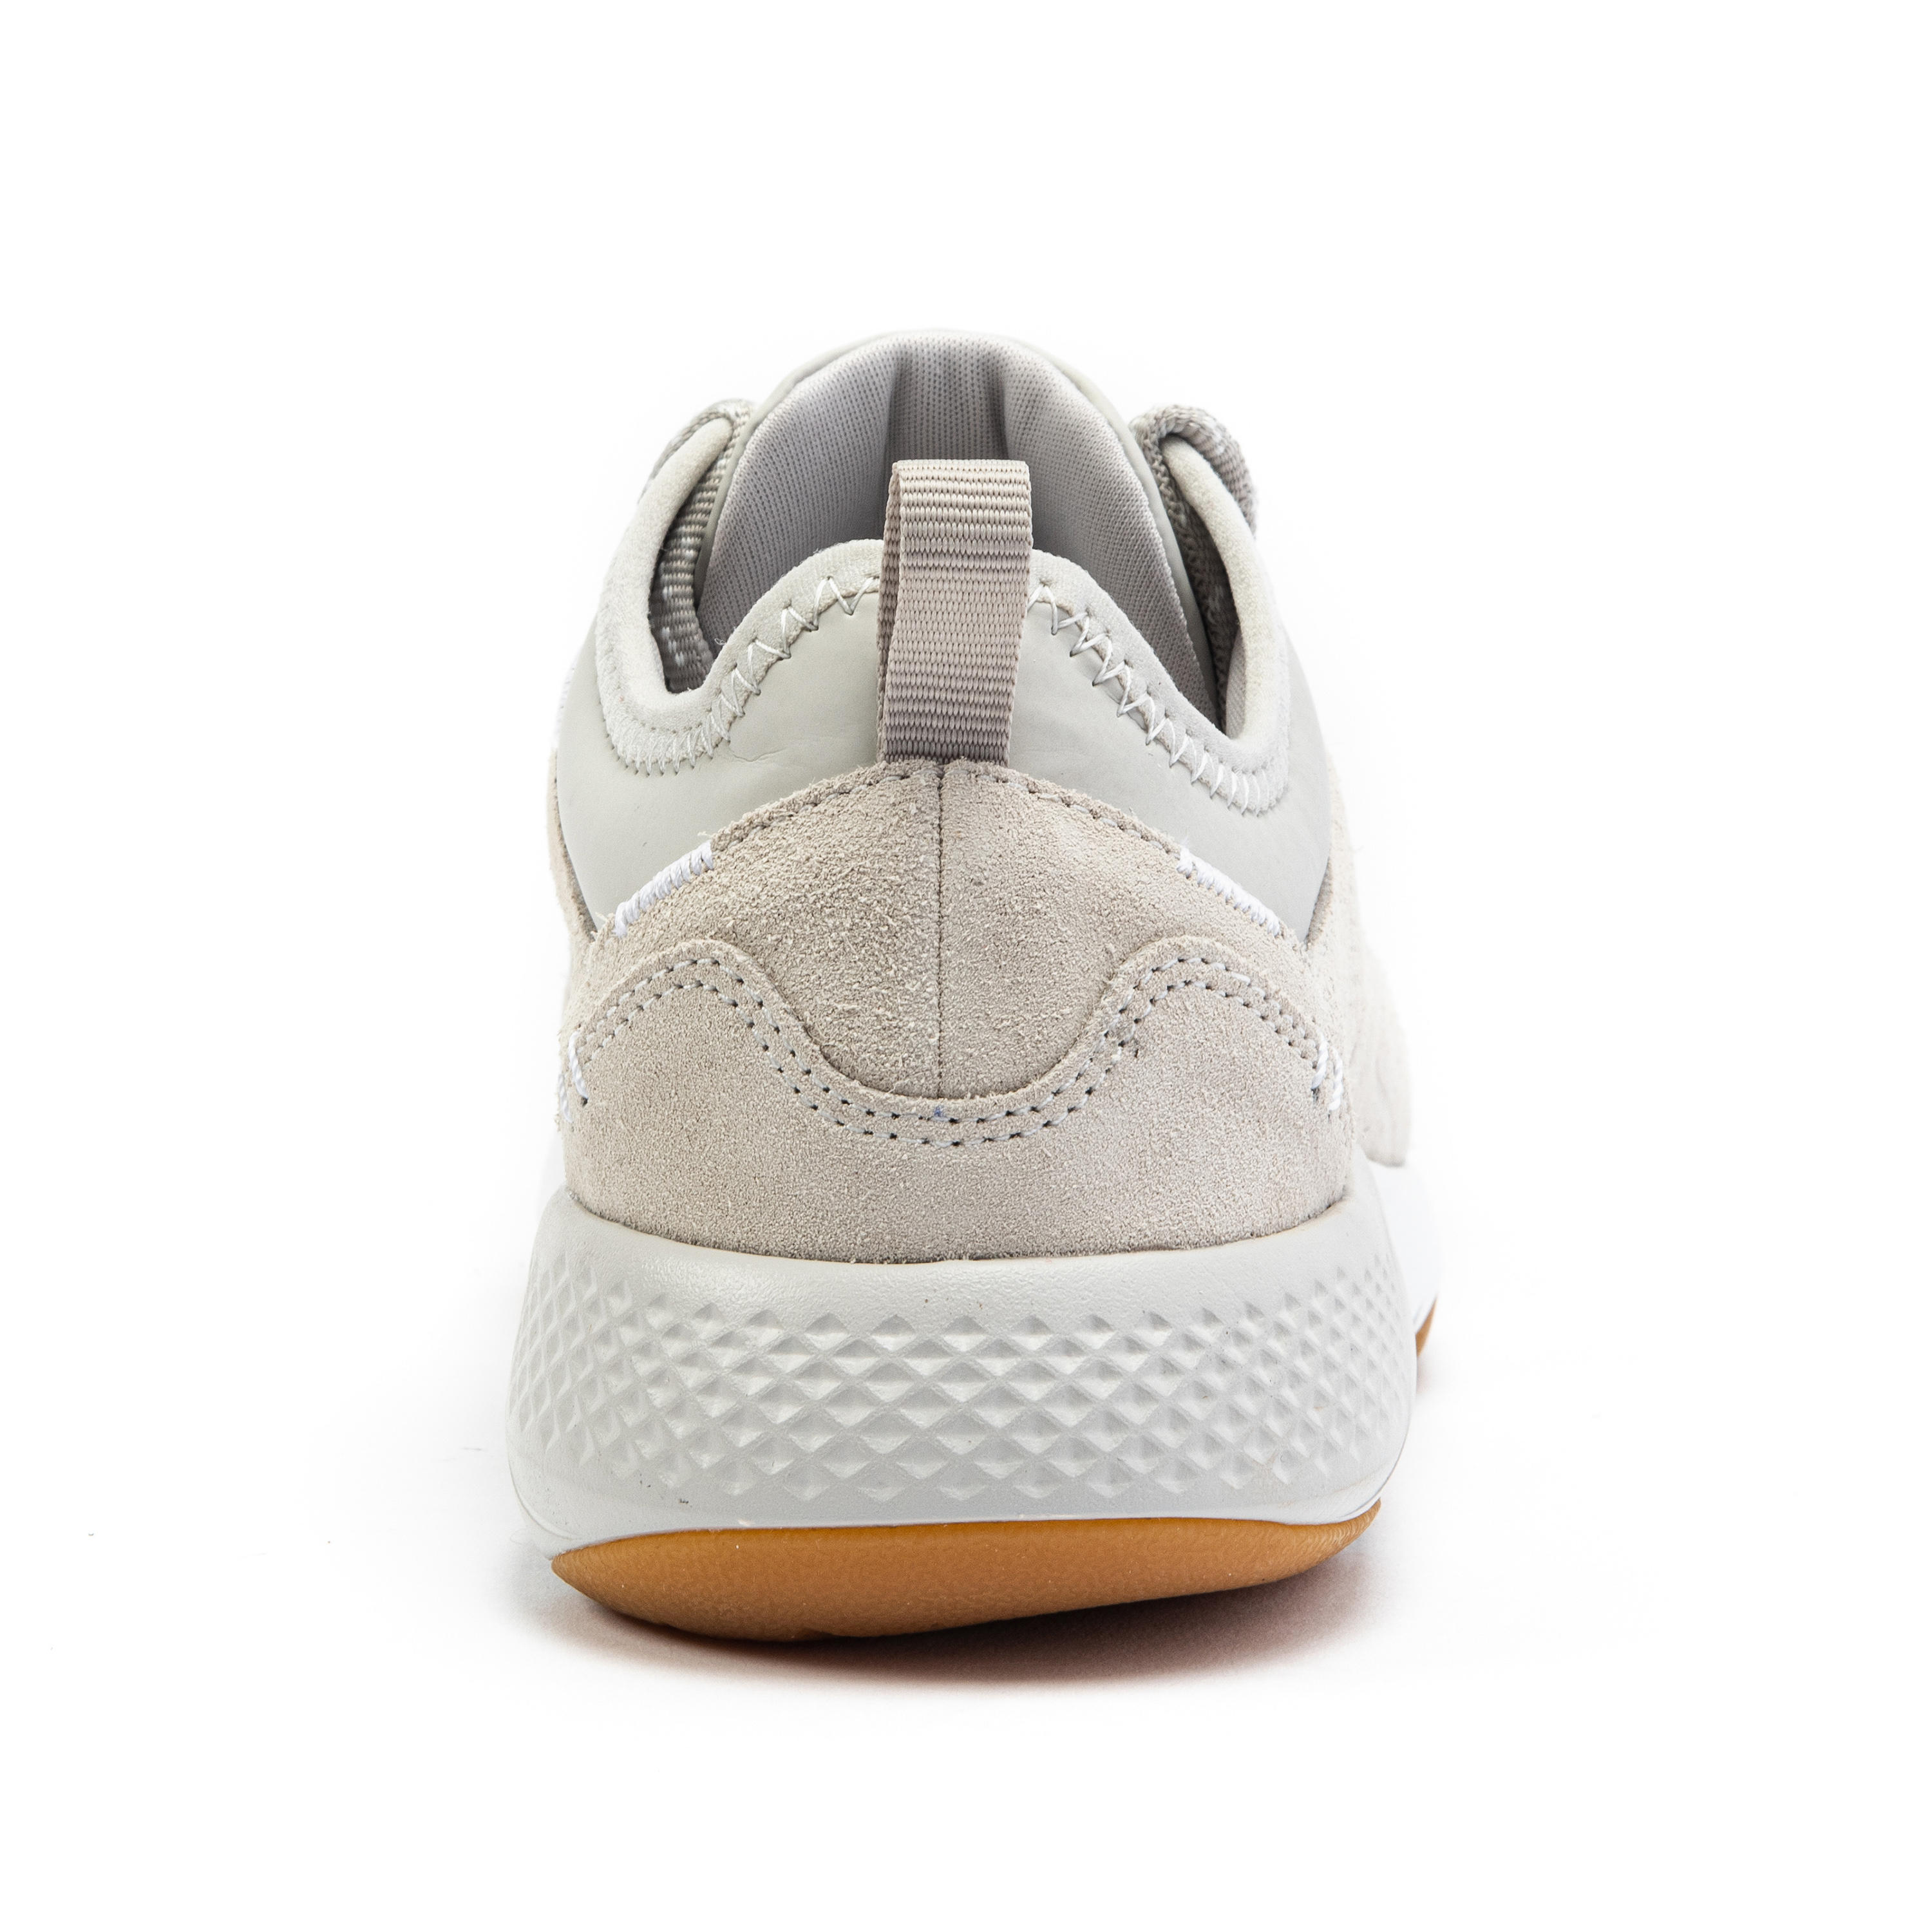 Women's City Walking Shoes Actiwalk Comfort Leather - beige 17/35